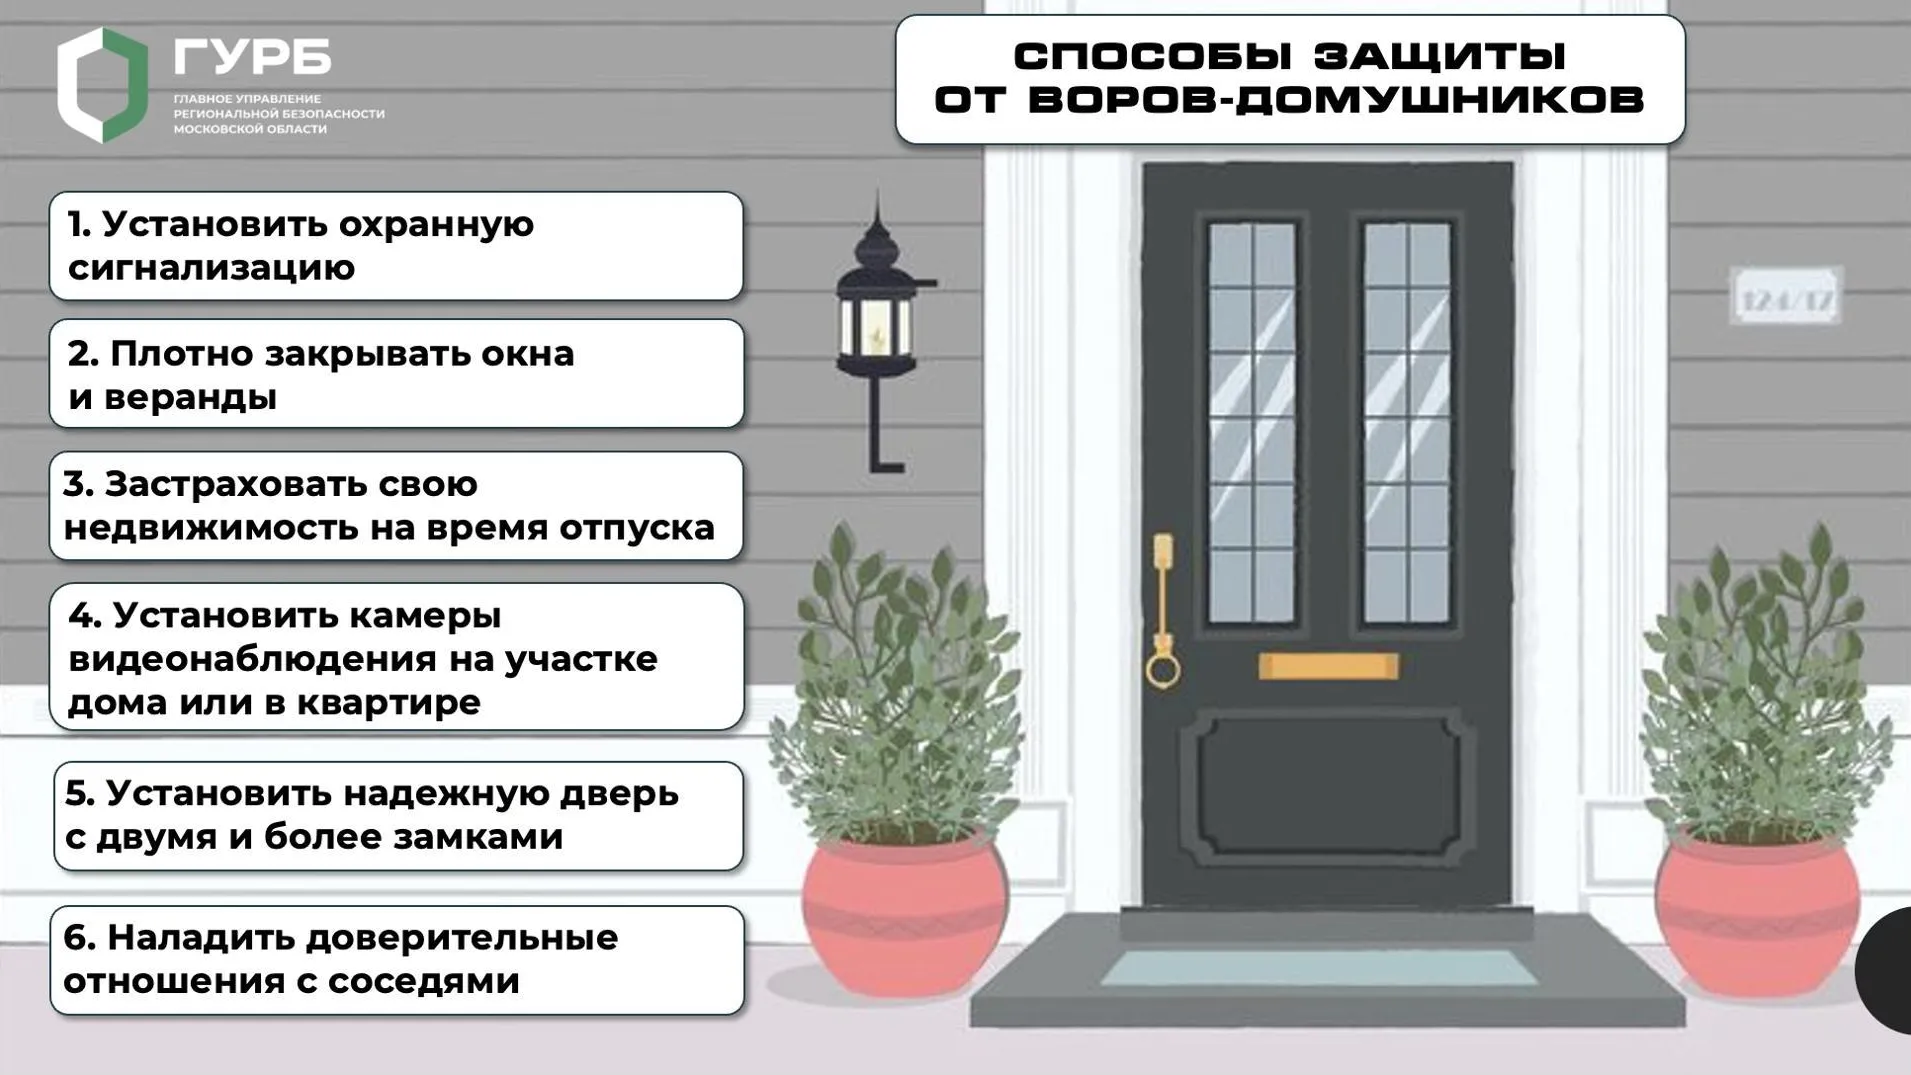 Жителям Подмосковья рассказали о безопасности дома в летний сезон отпусков